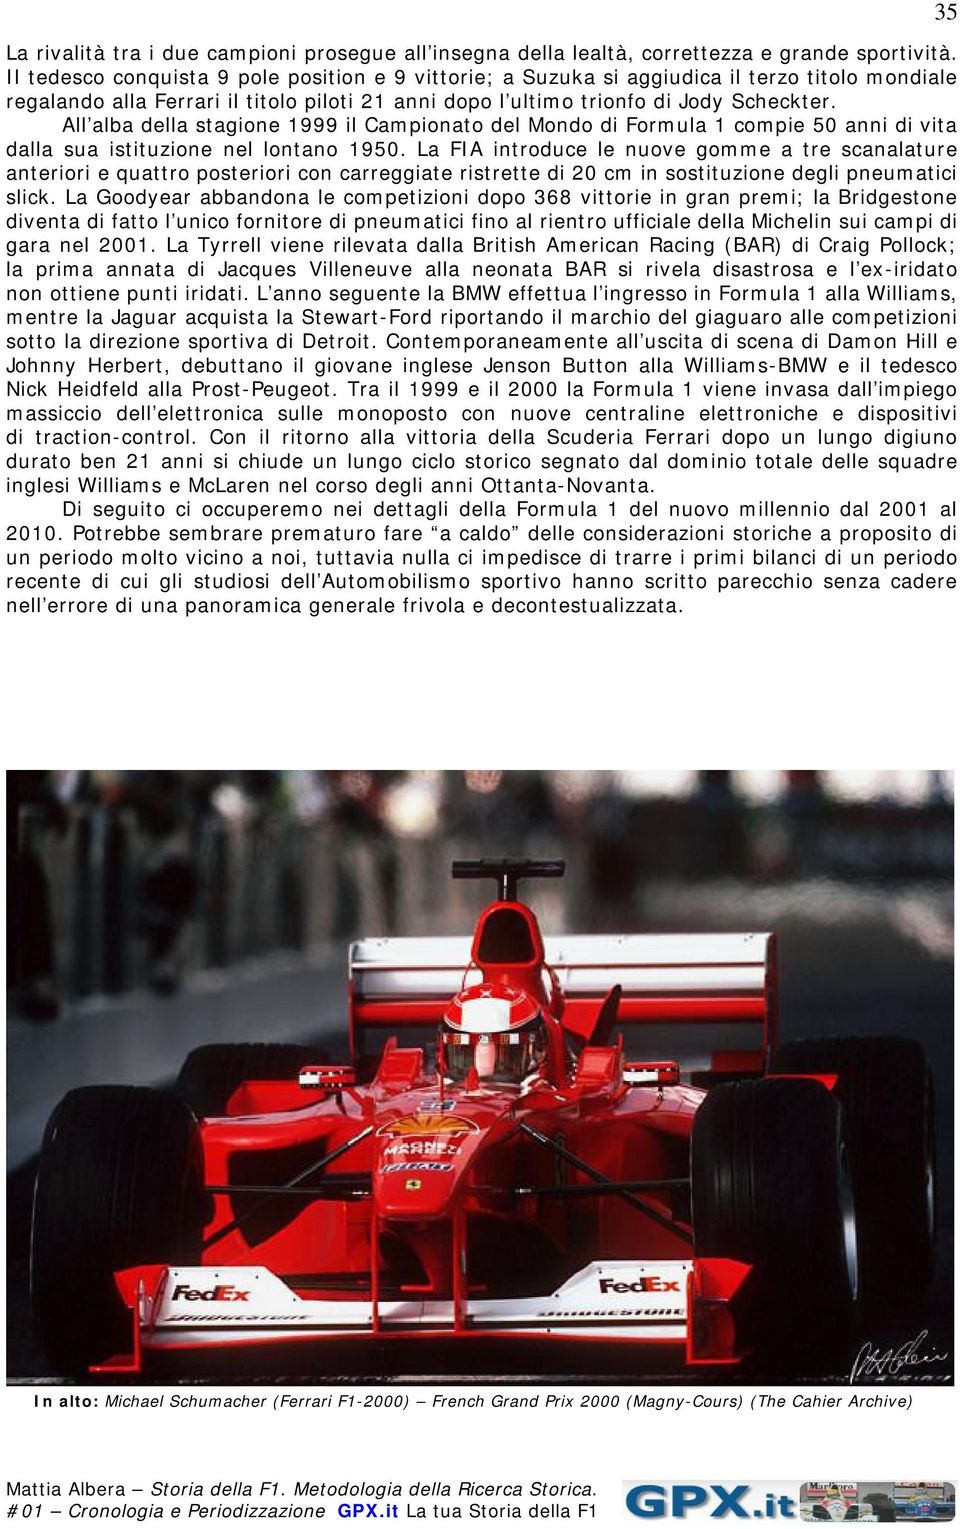 All alba della stagione 1999 il Campionato del Mondo di Formula 1 compie 50 anni di vita dalla sua istituzione nel lontano 1950.